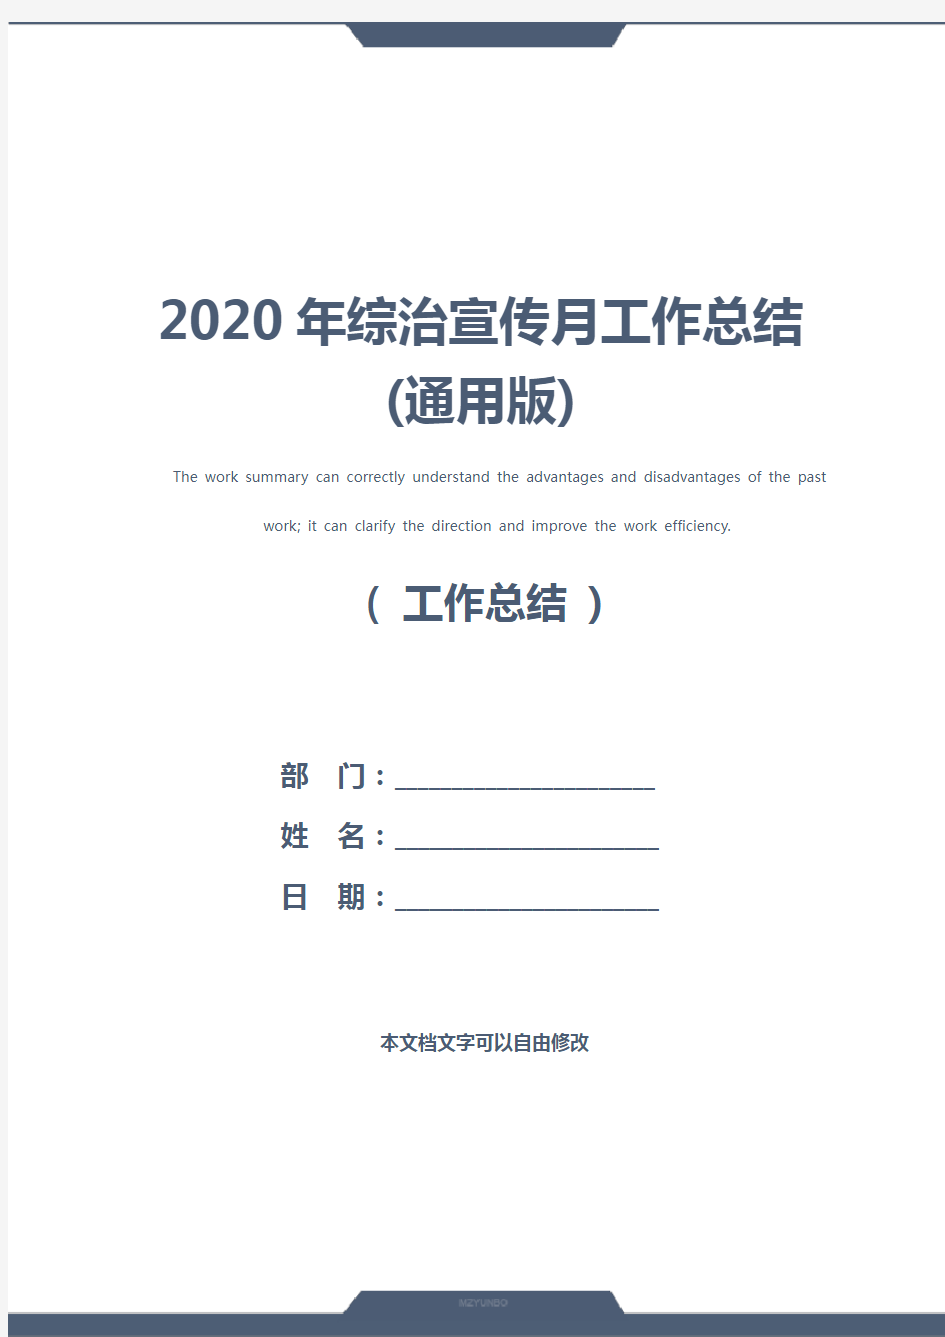 2020年综治宣传月工作总结(通用版)